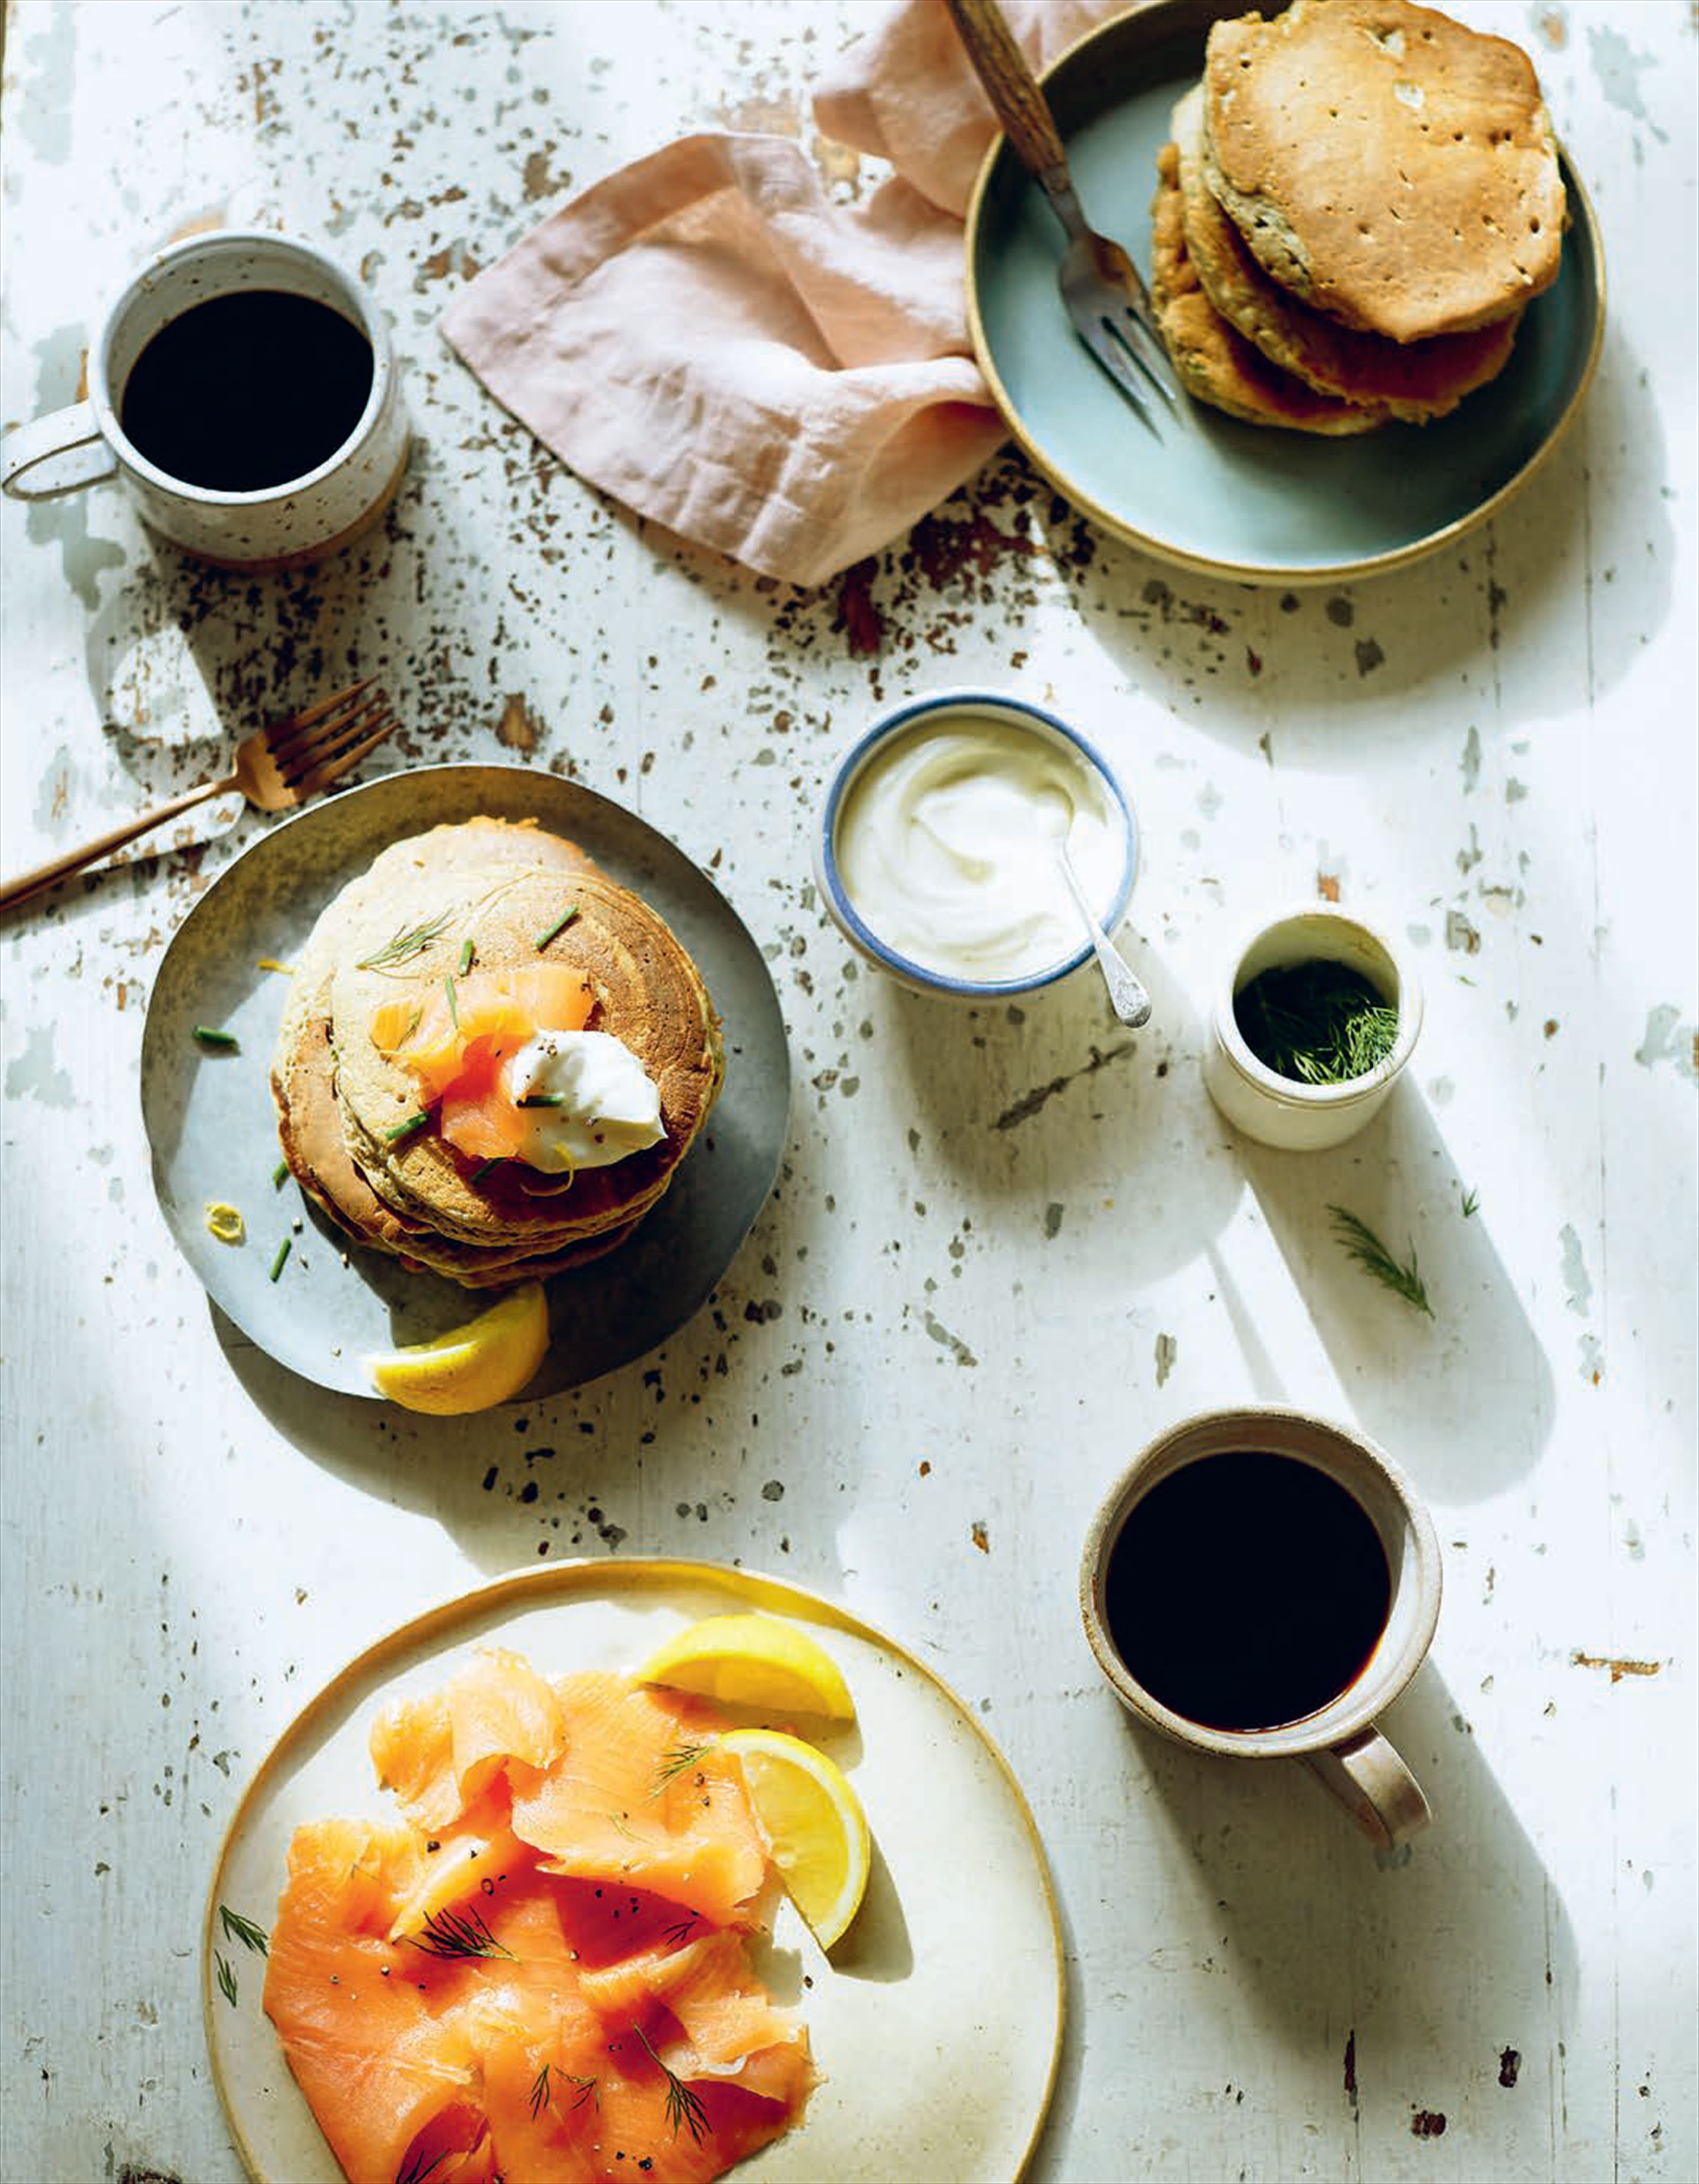 Buckwheat, chive & lemon pancakes with smoked salmon & crème fraîche